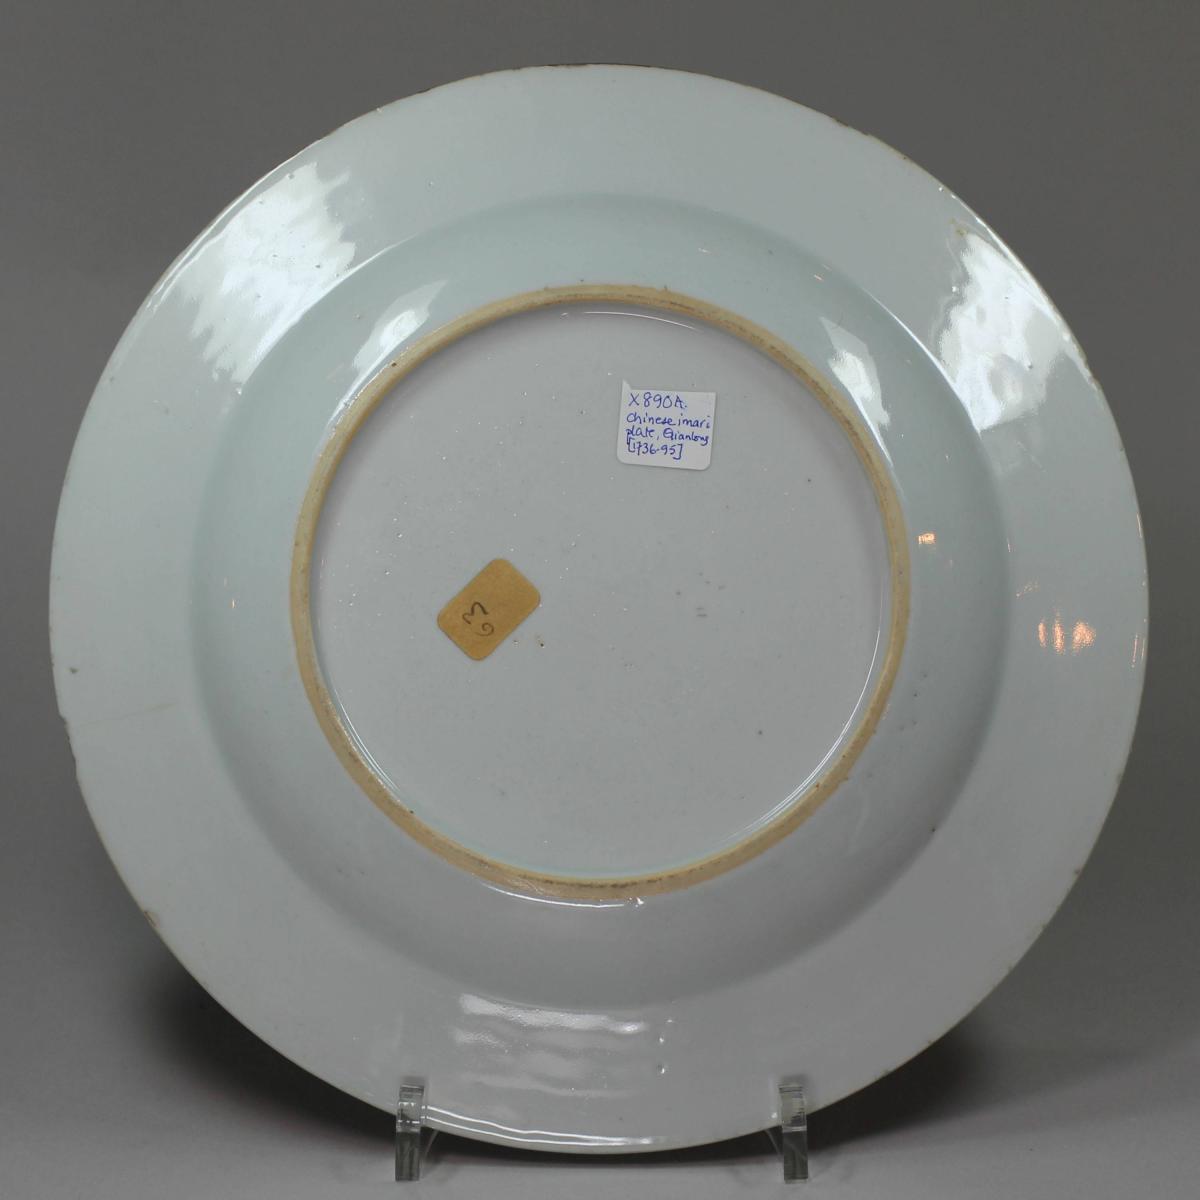 Reverse of Chinese Imari plate